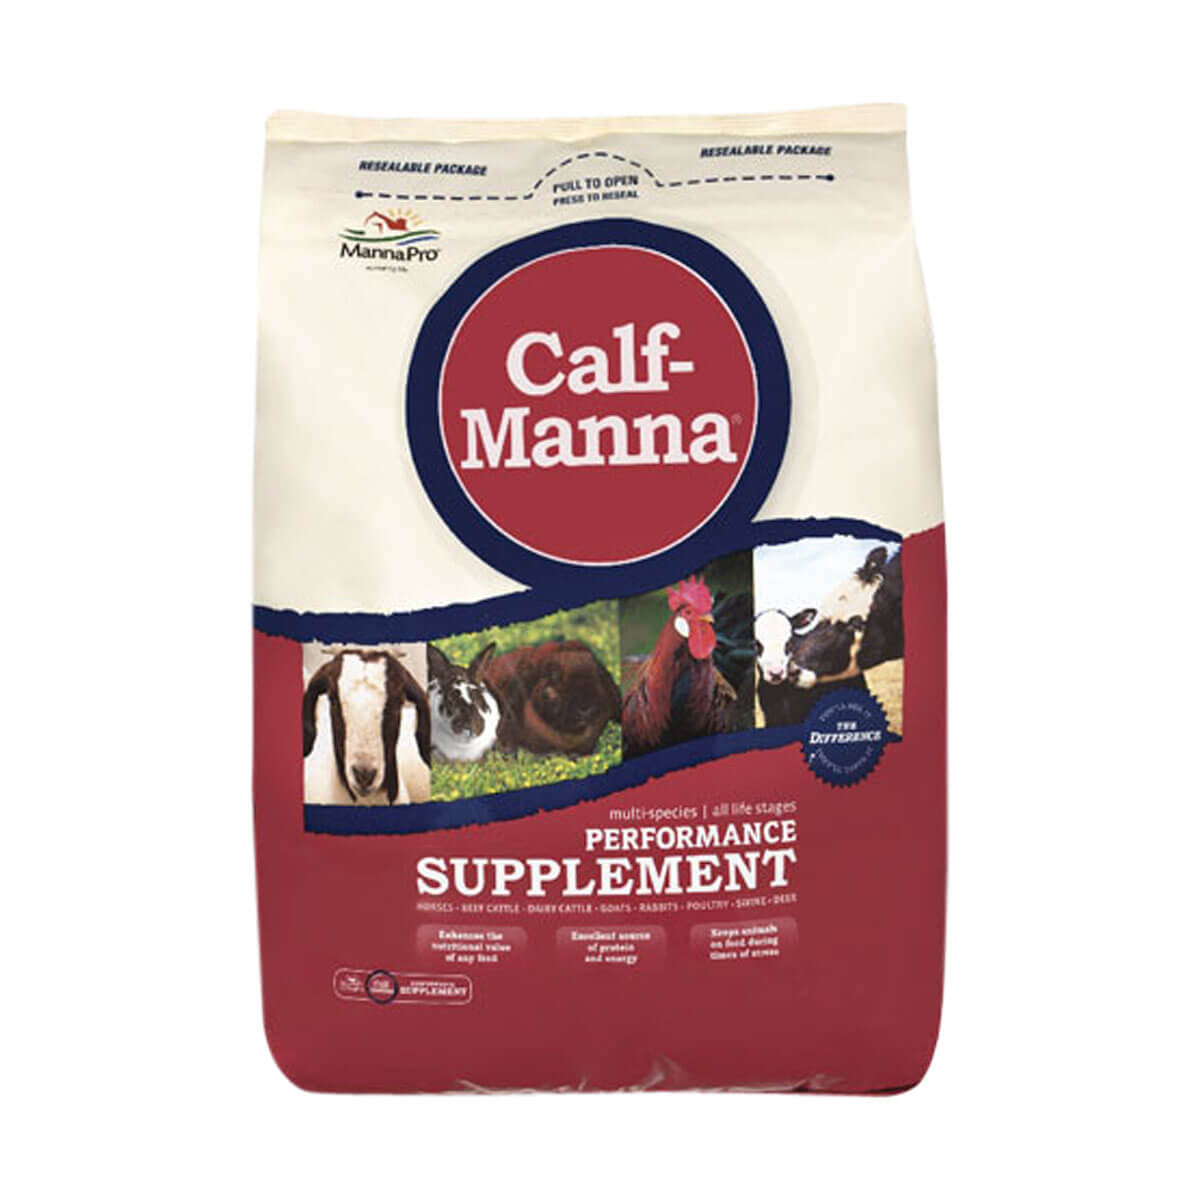 Calf-Manna Performance Supplement - 22.67 kg